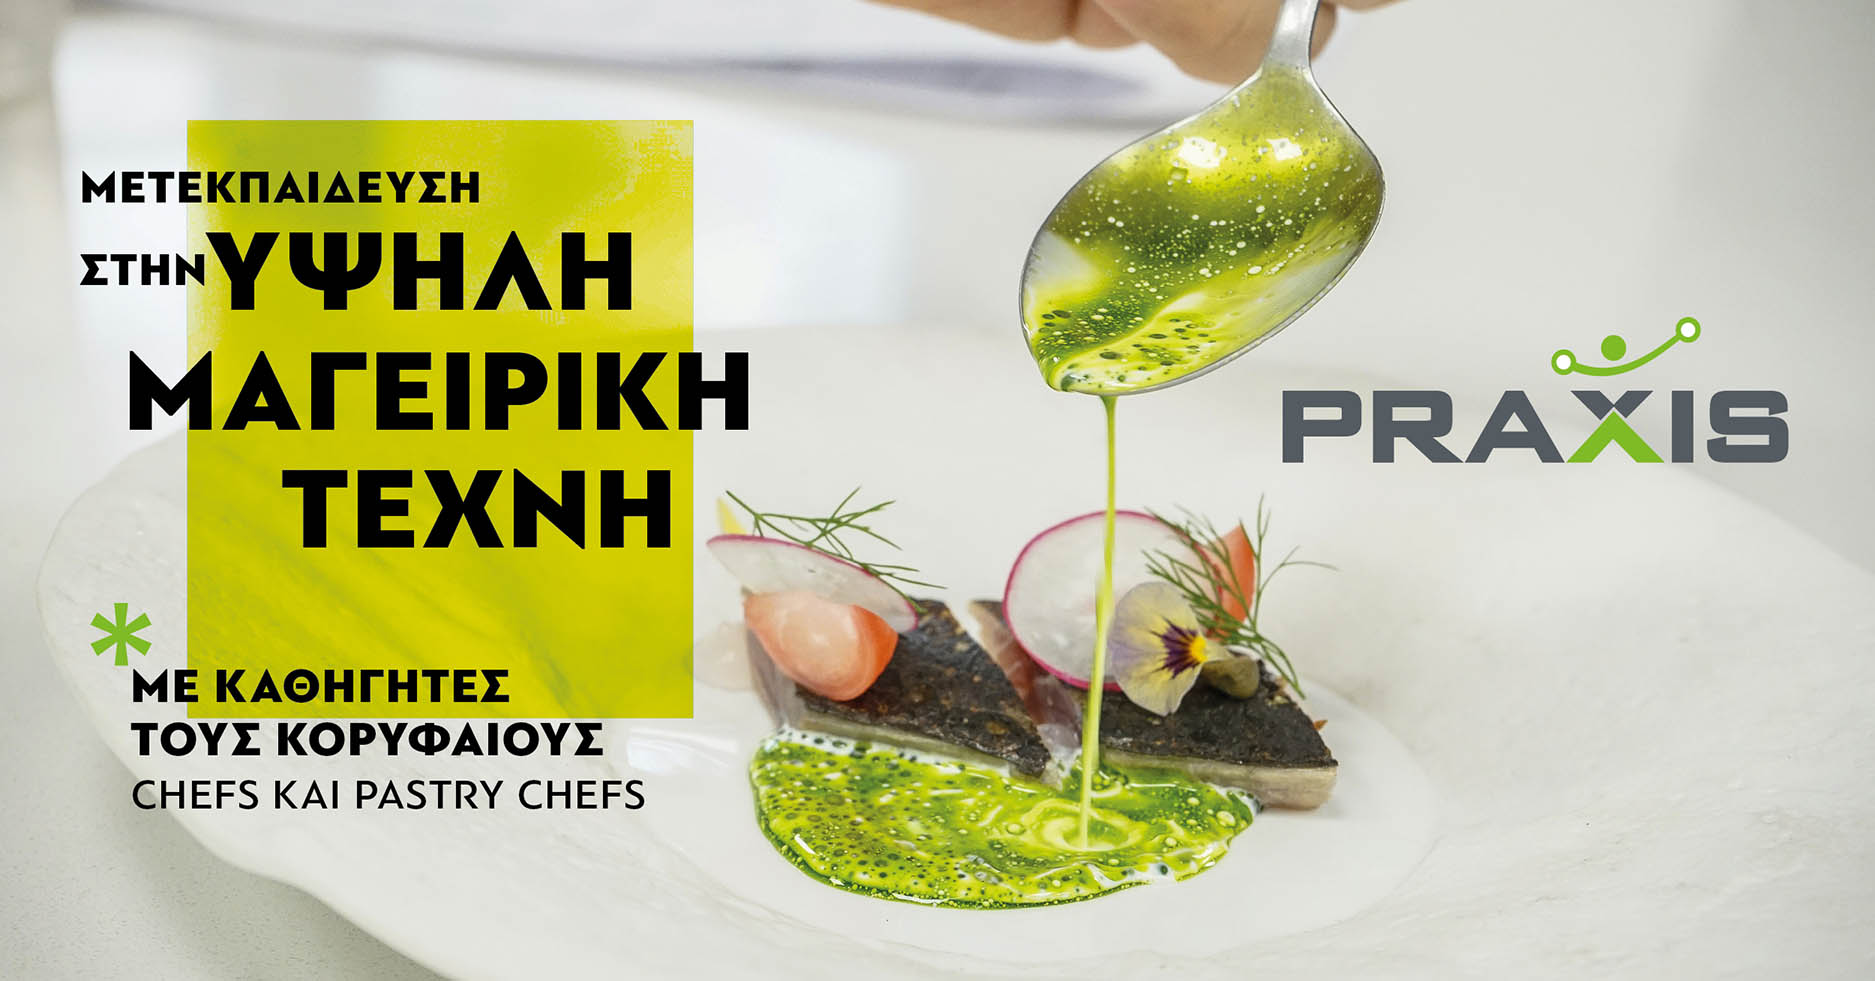 Μετεκπαίδευση στην Υψηλή Μαγειρική Τέχνη: PRAXIS Gastronomy PostGraduate Course